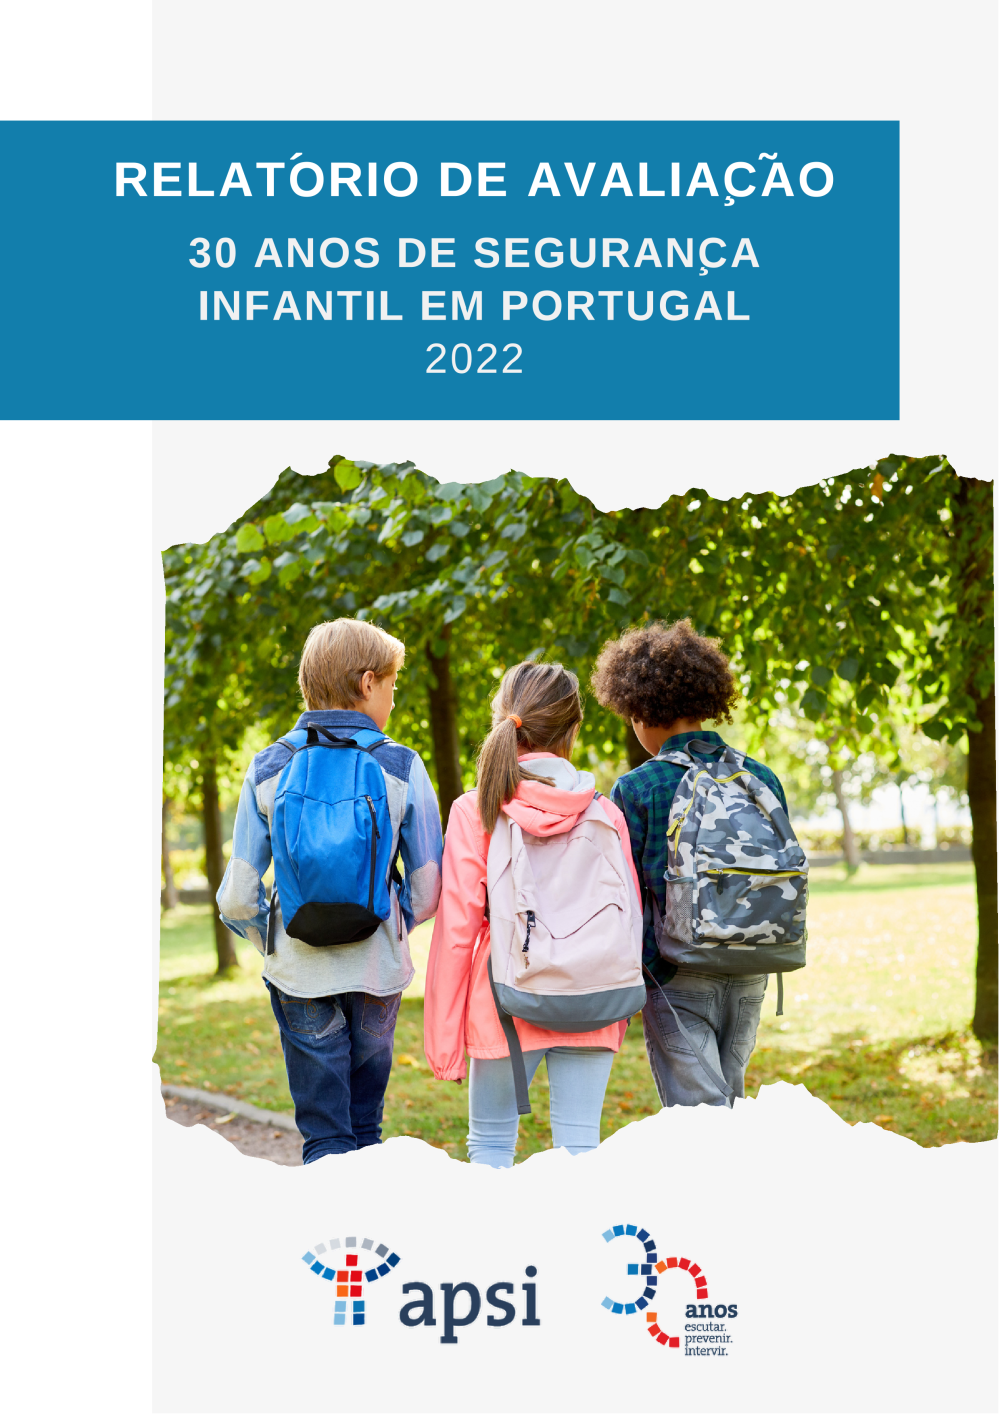 RELATÓRIO DE AVALIAÇÃO 30 ANOS DE SEGURANÇA INFANTIL EM PORTUGAL 2022